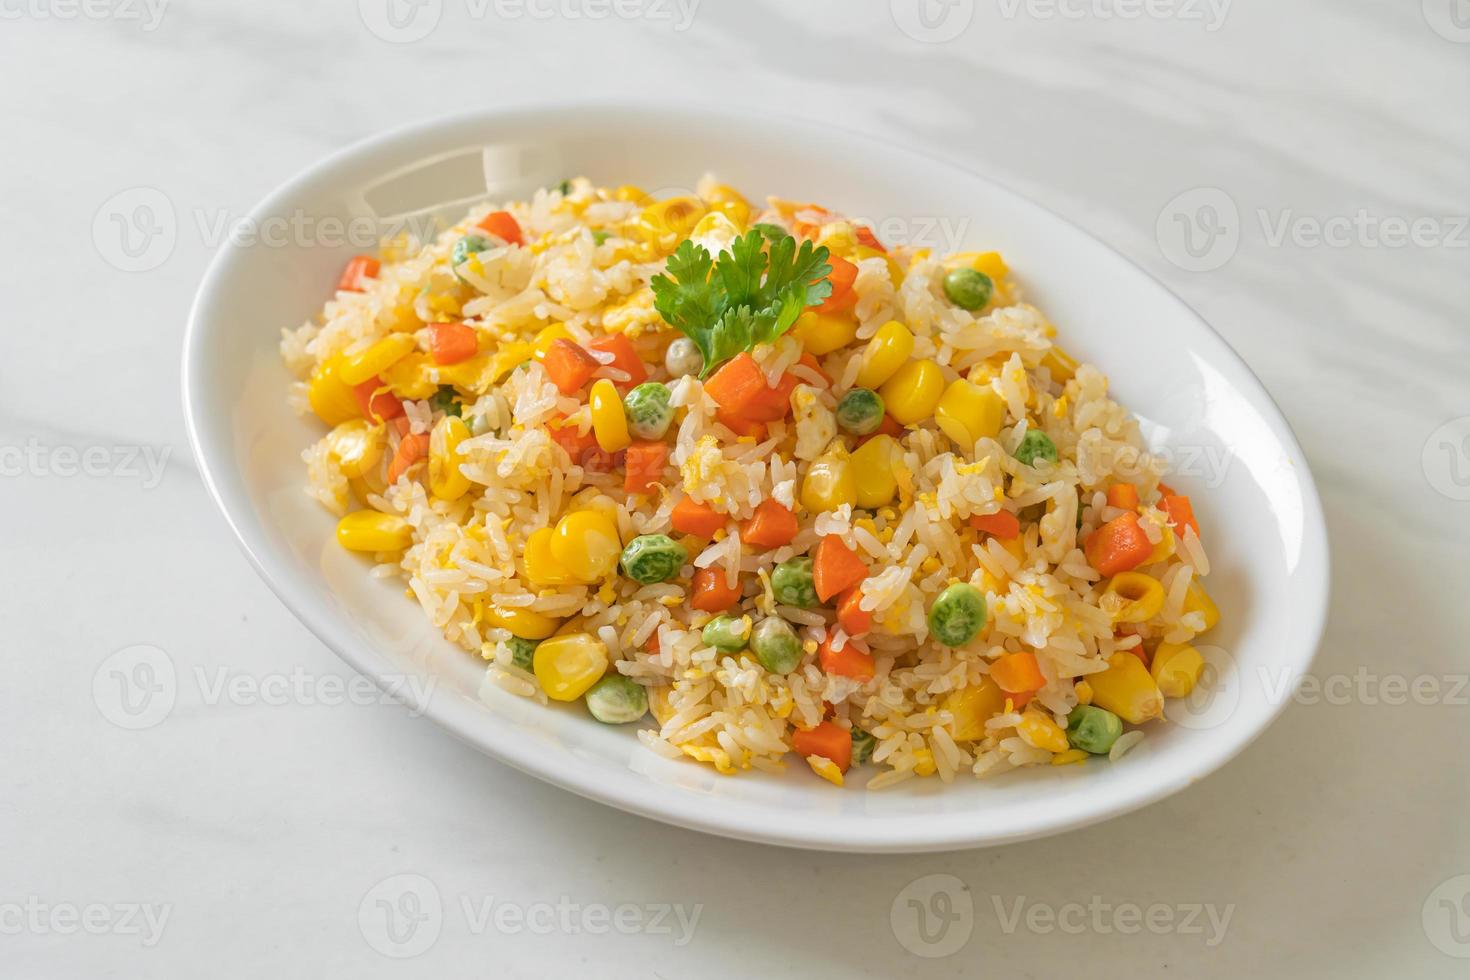 hemlagat stekt ris med blandade grönsaker av morot, gröna bönor, majs och ägg foto